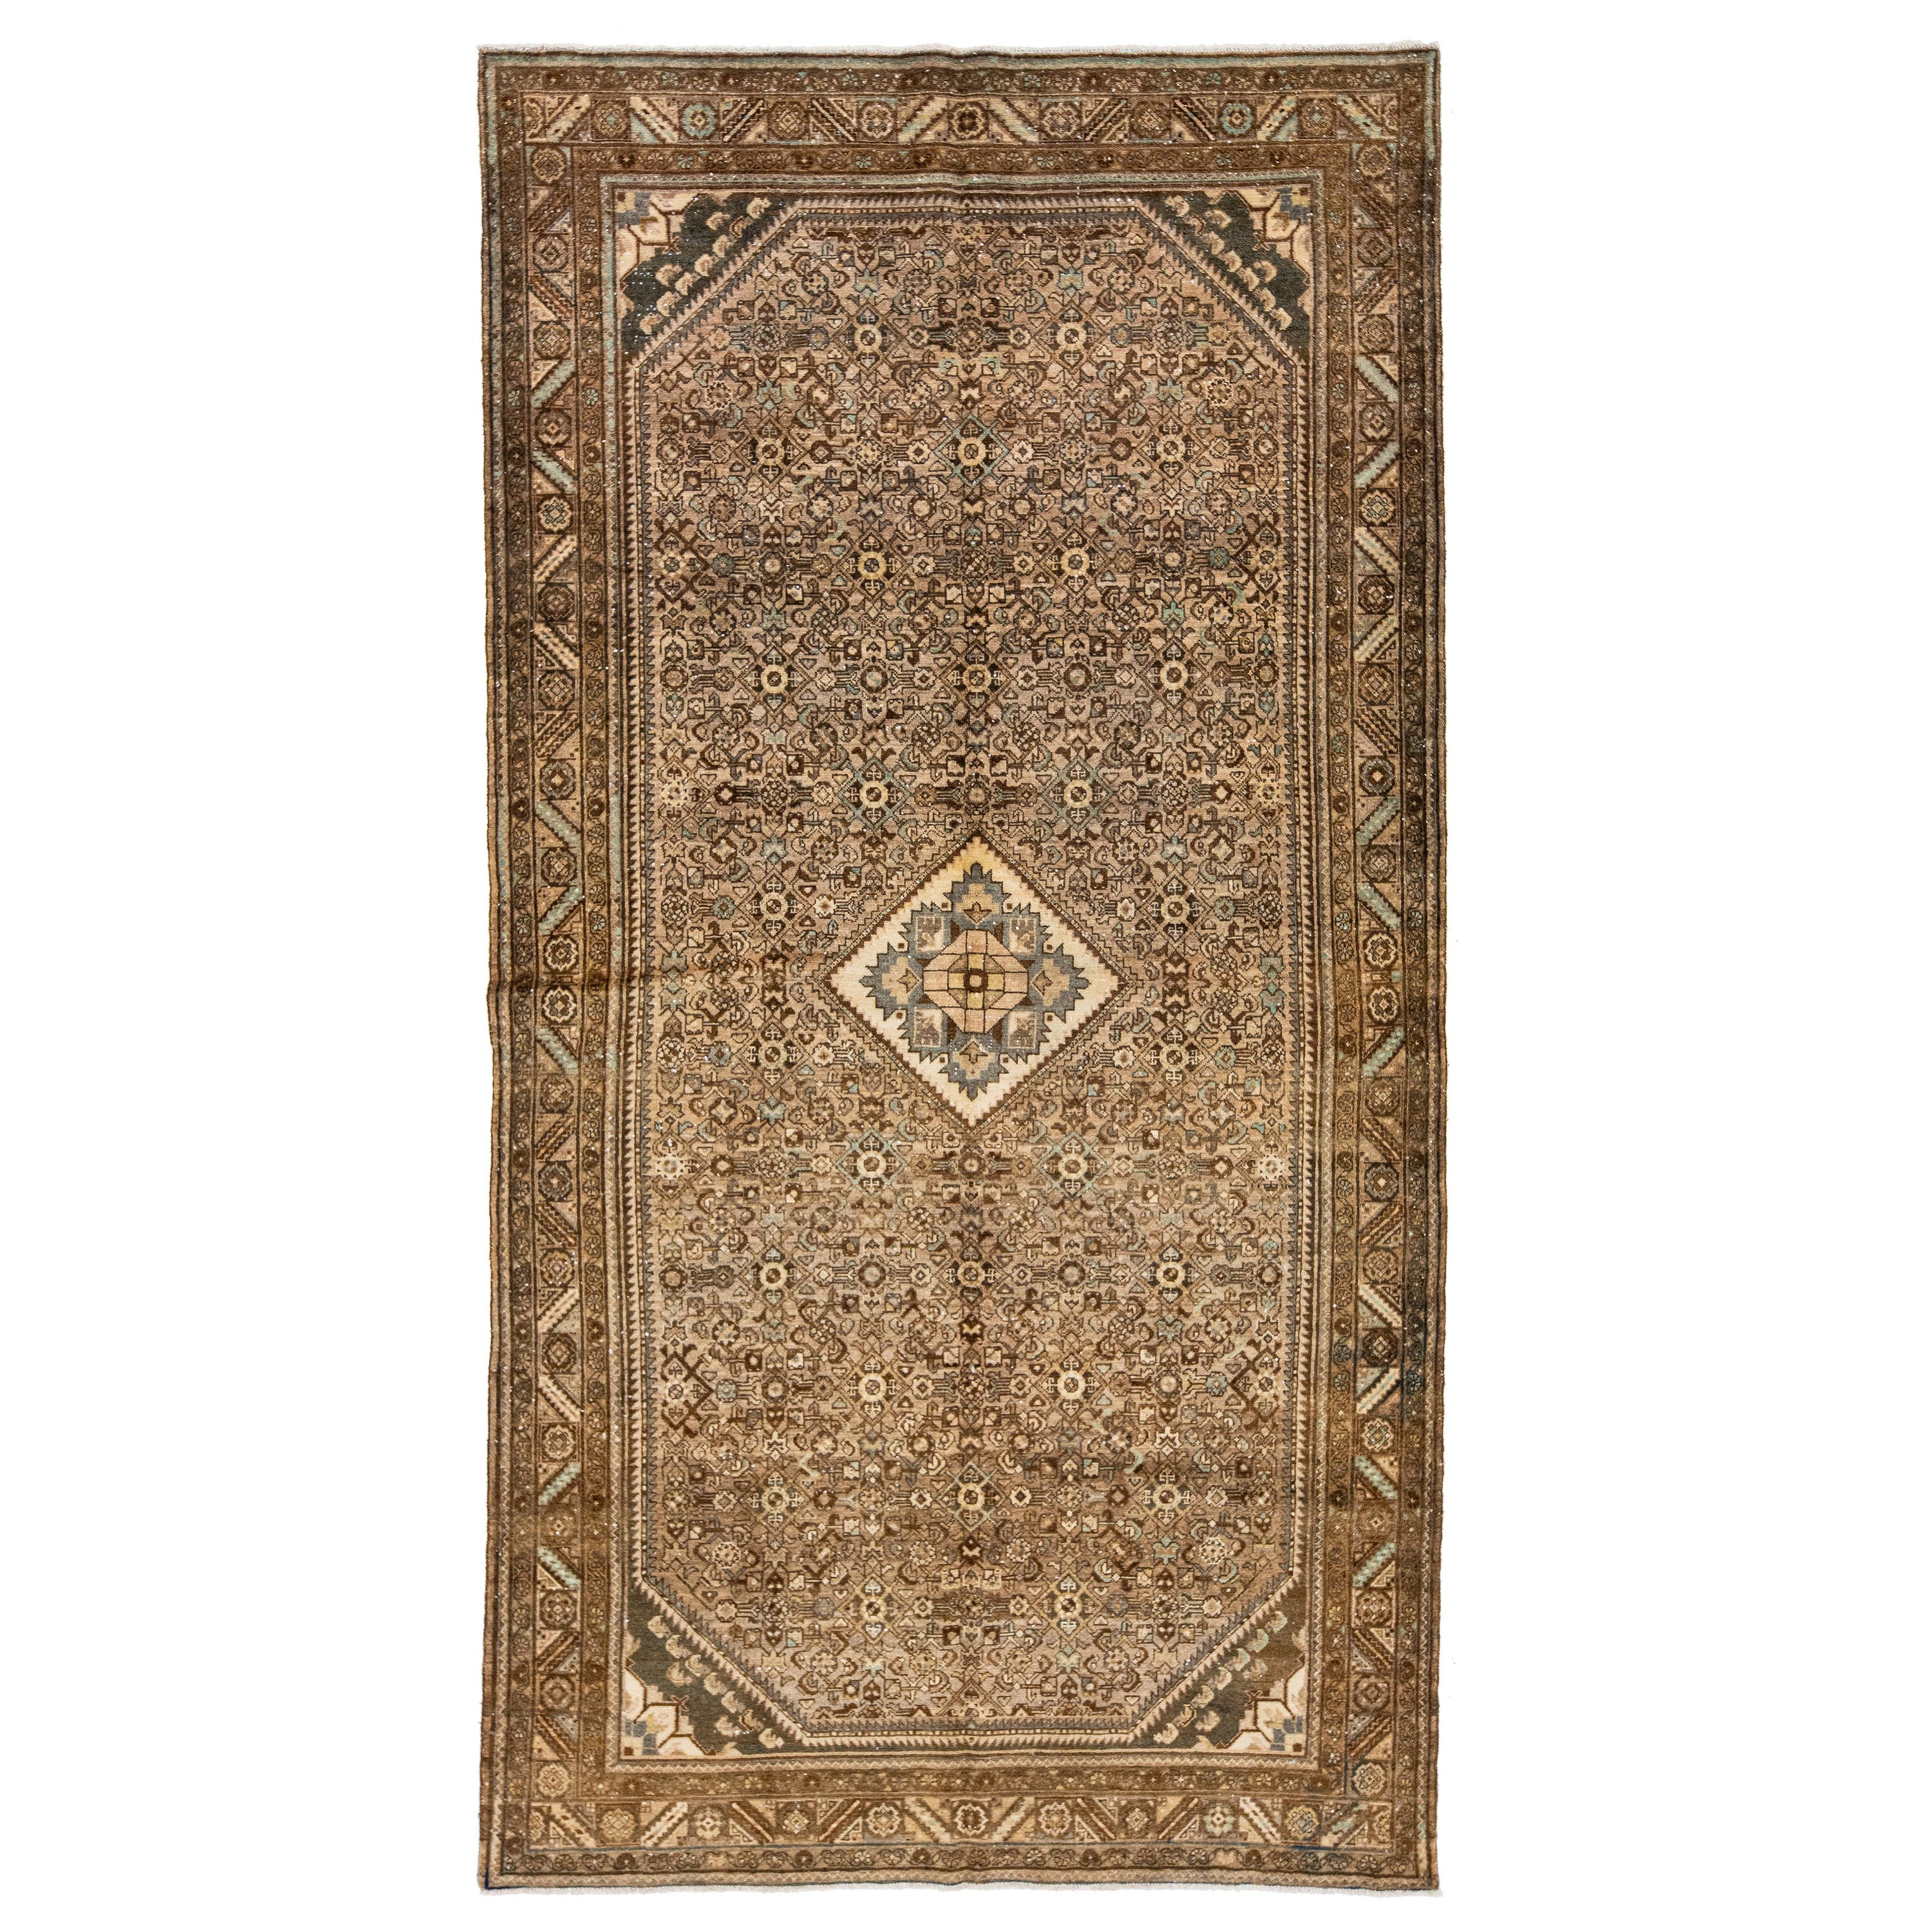 Tapis de laine persane Hamadan antique, marron clair, avec motif de médaillon